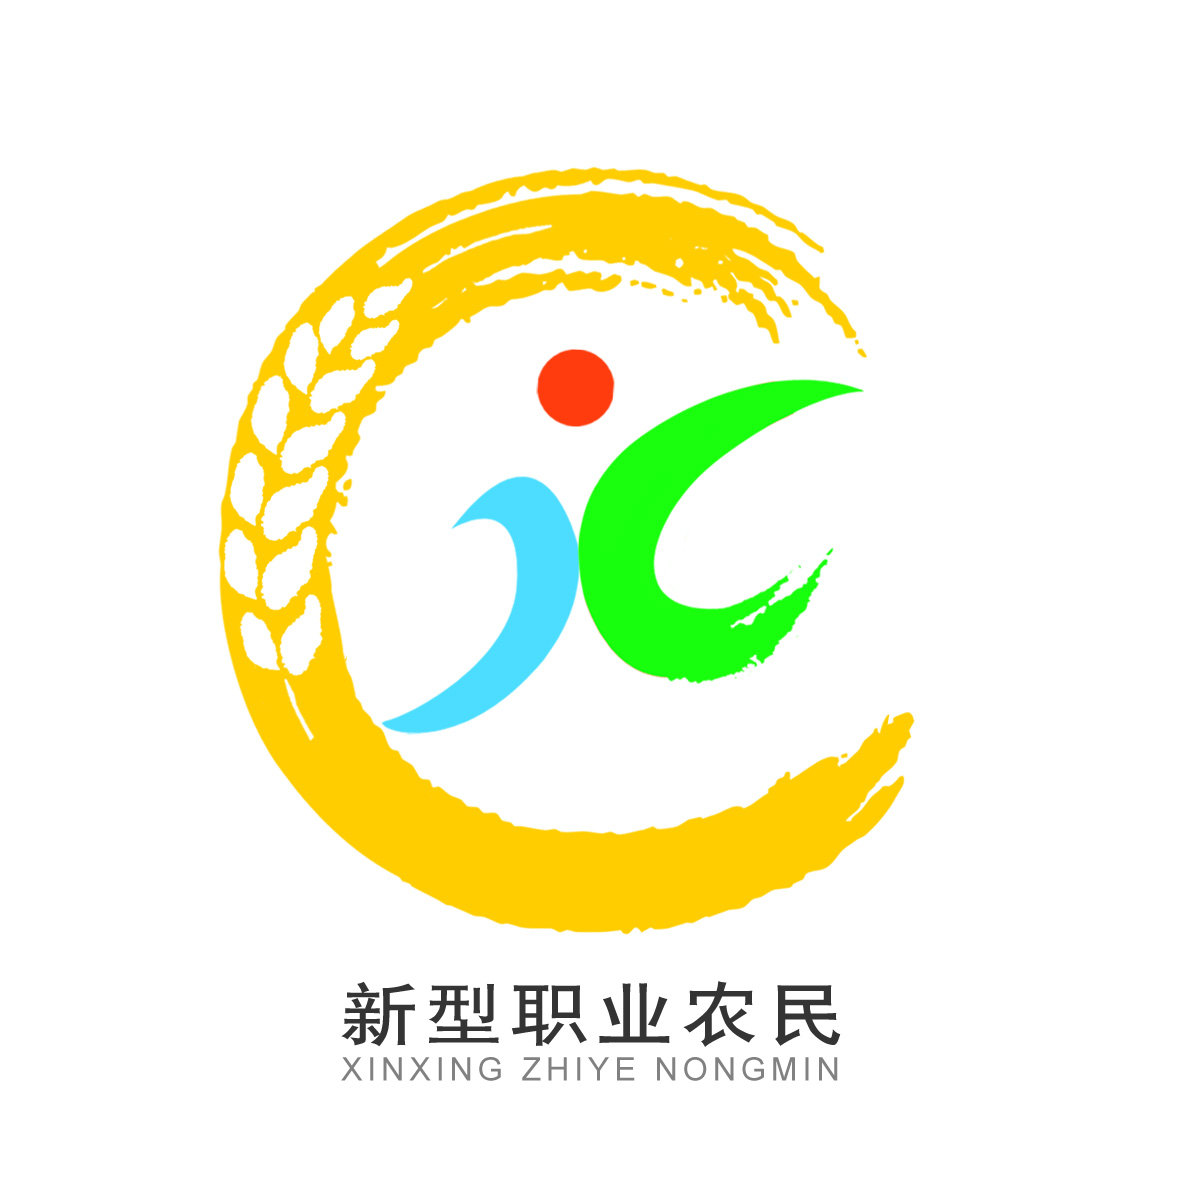 四川省級新型職業農民培育示範基地